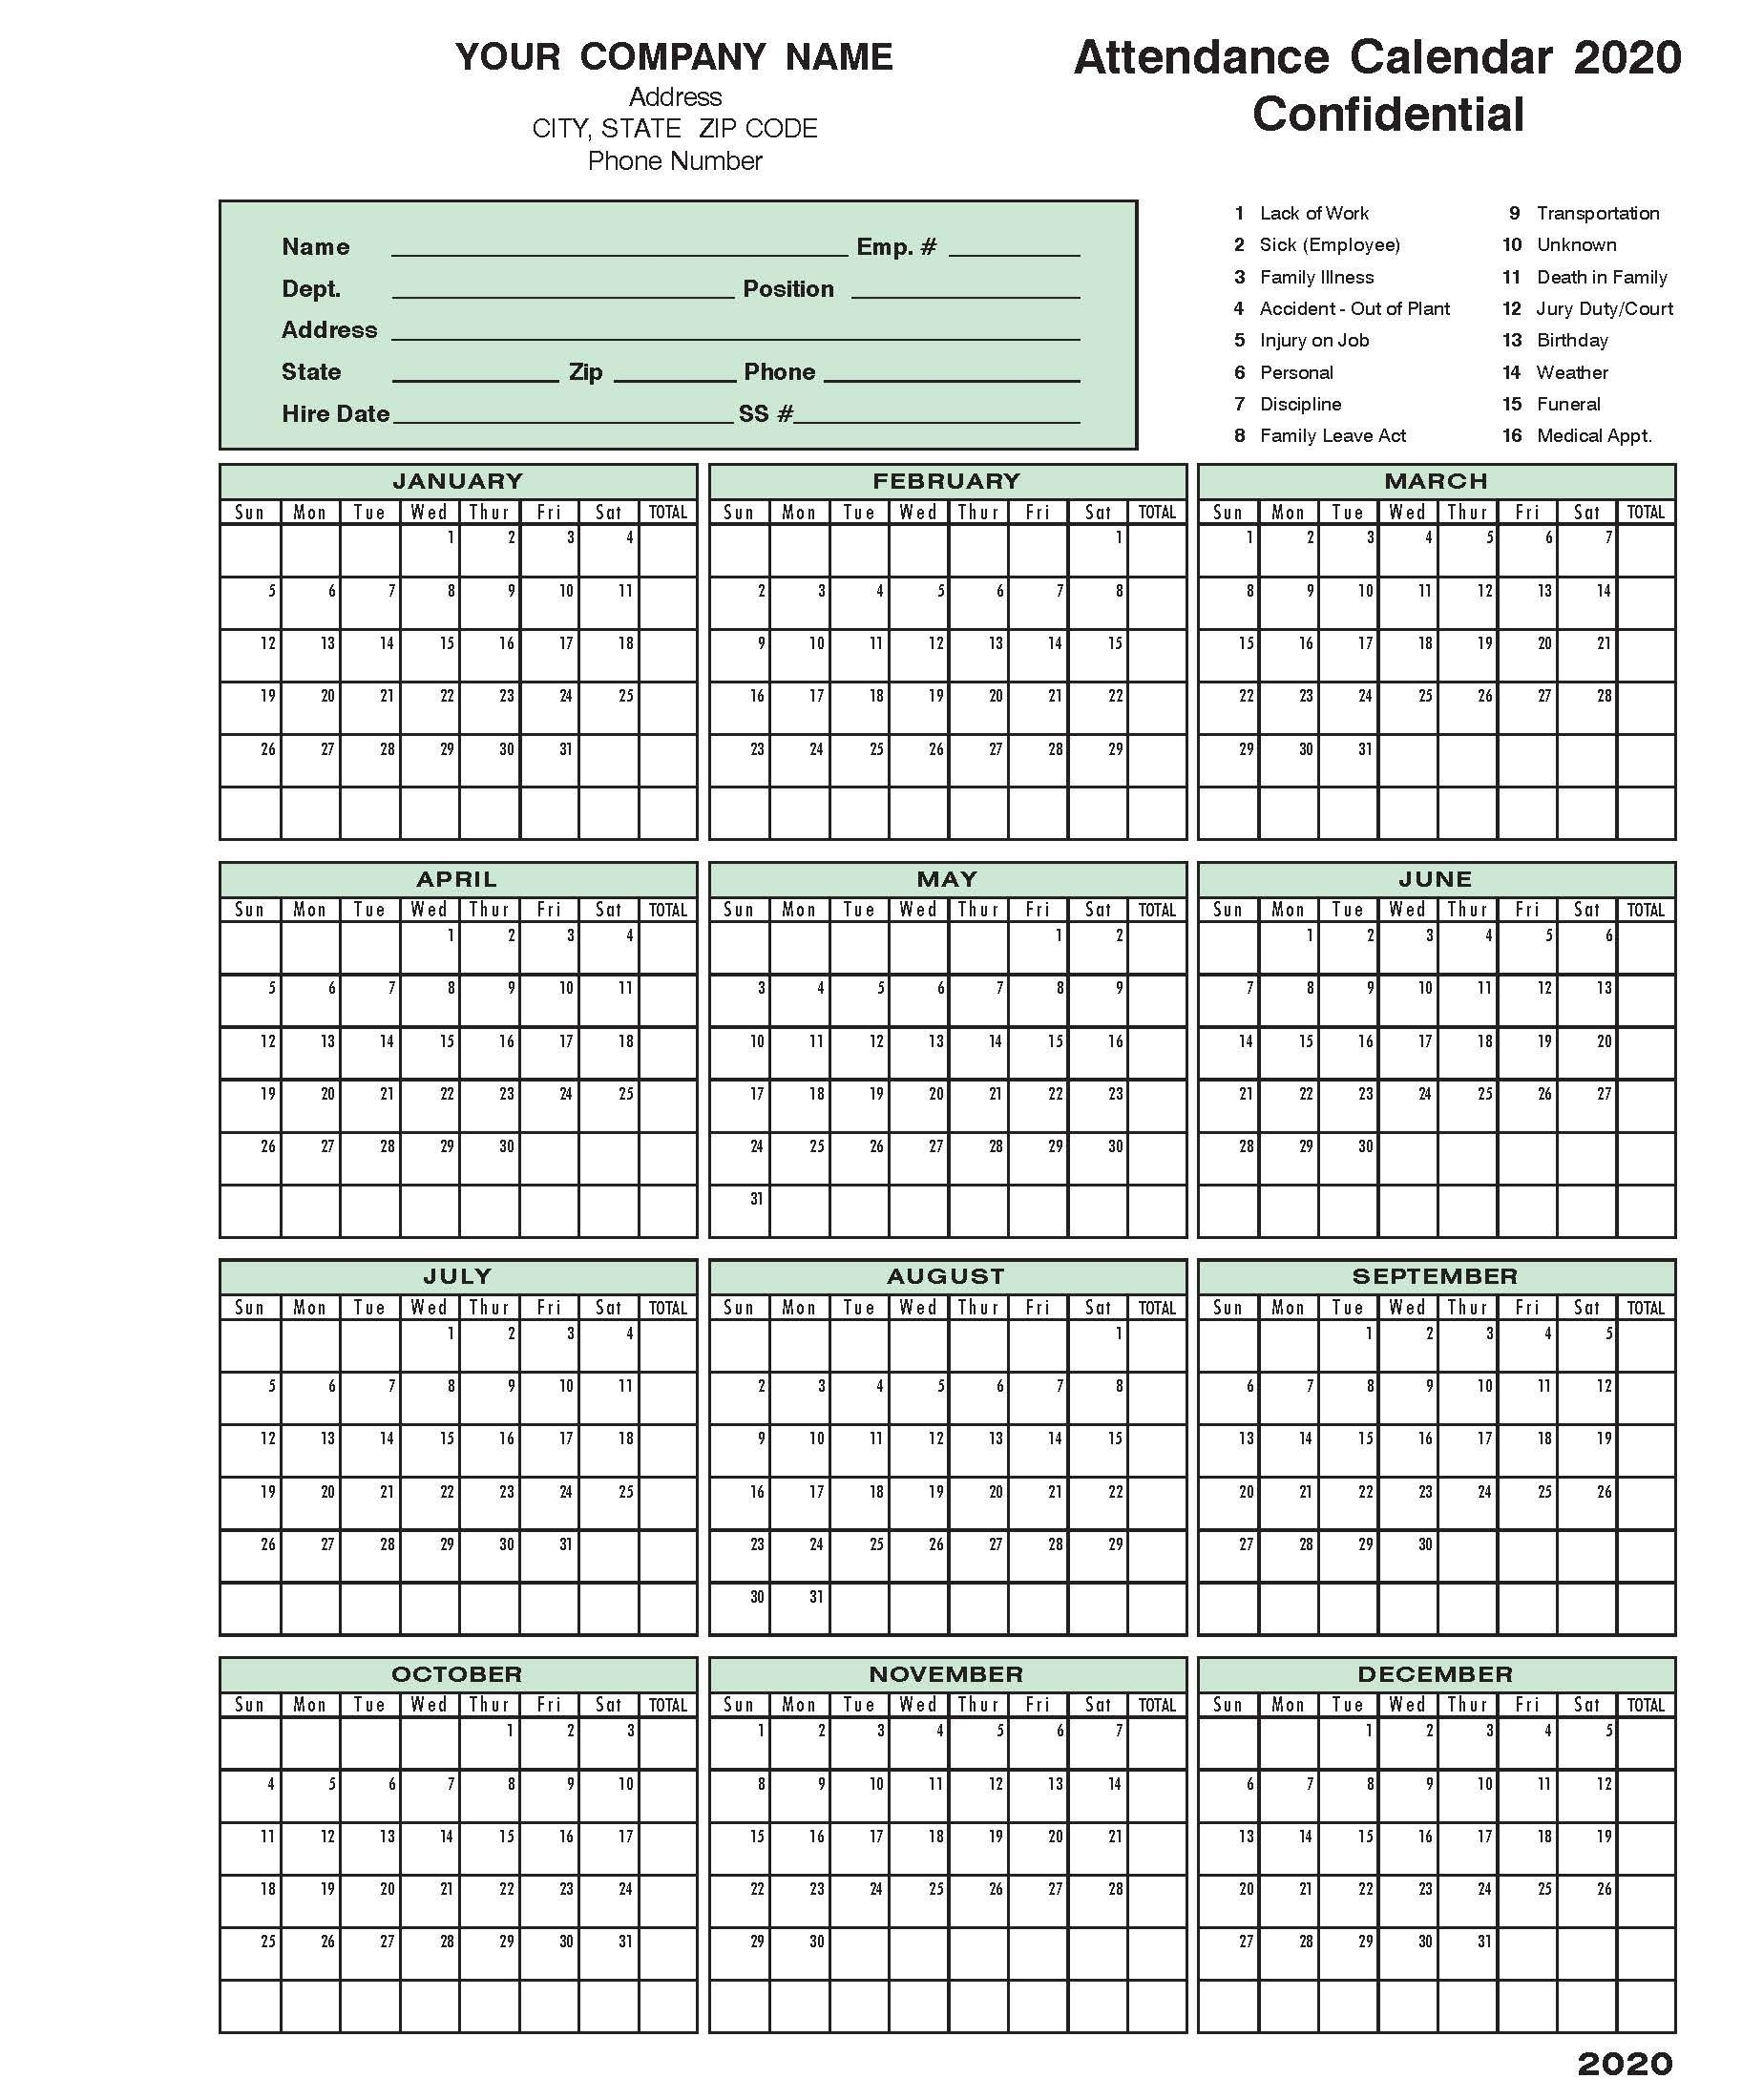 2020 Attendance Calendar In 2020 | Calendar Template within Employee Attendance Calendar 2020 Printable Free